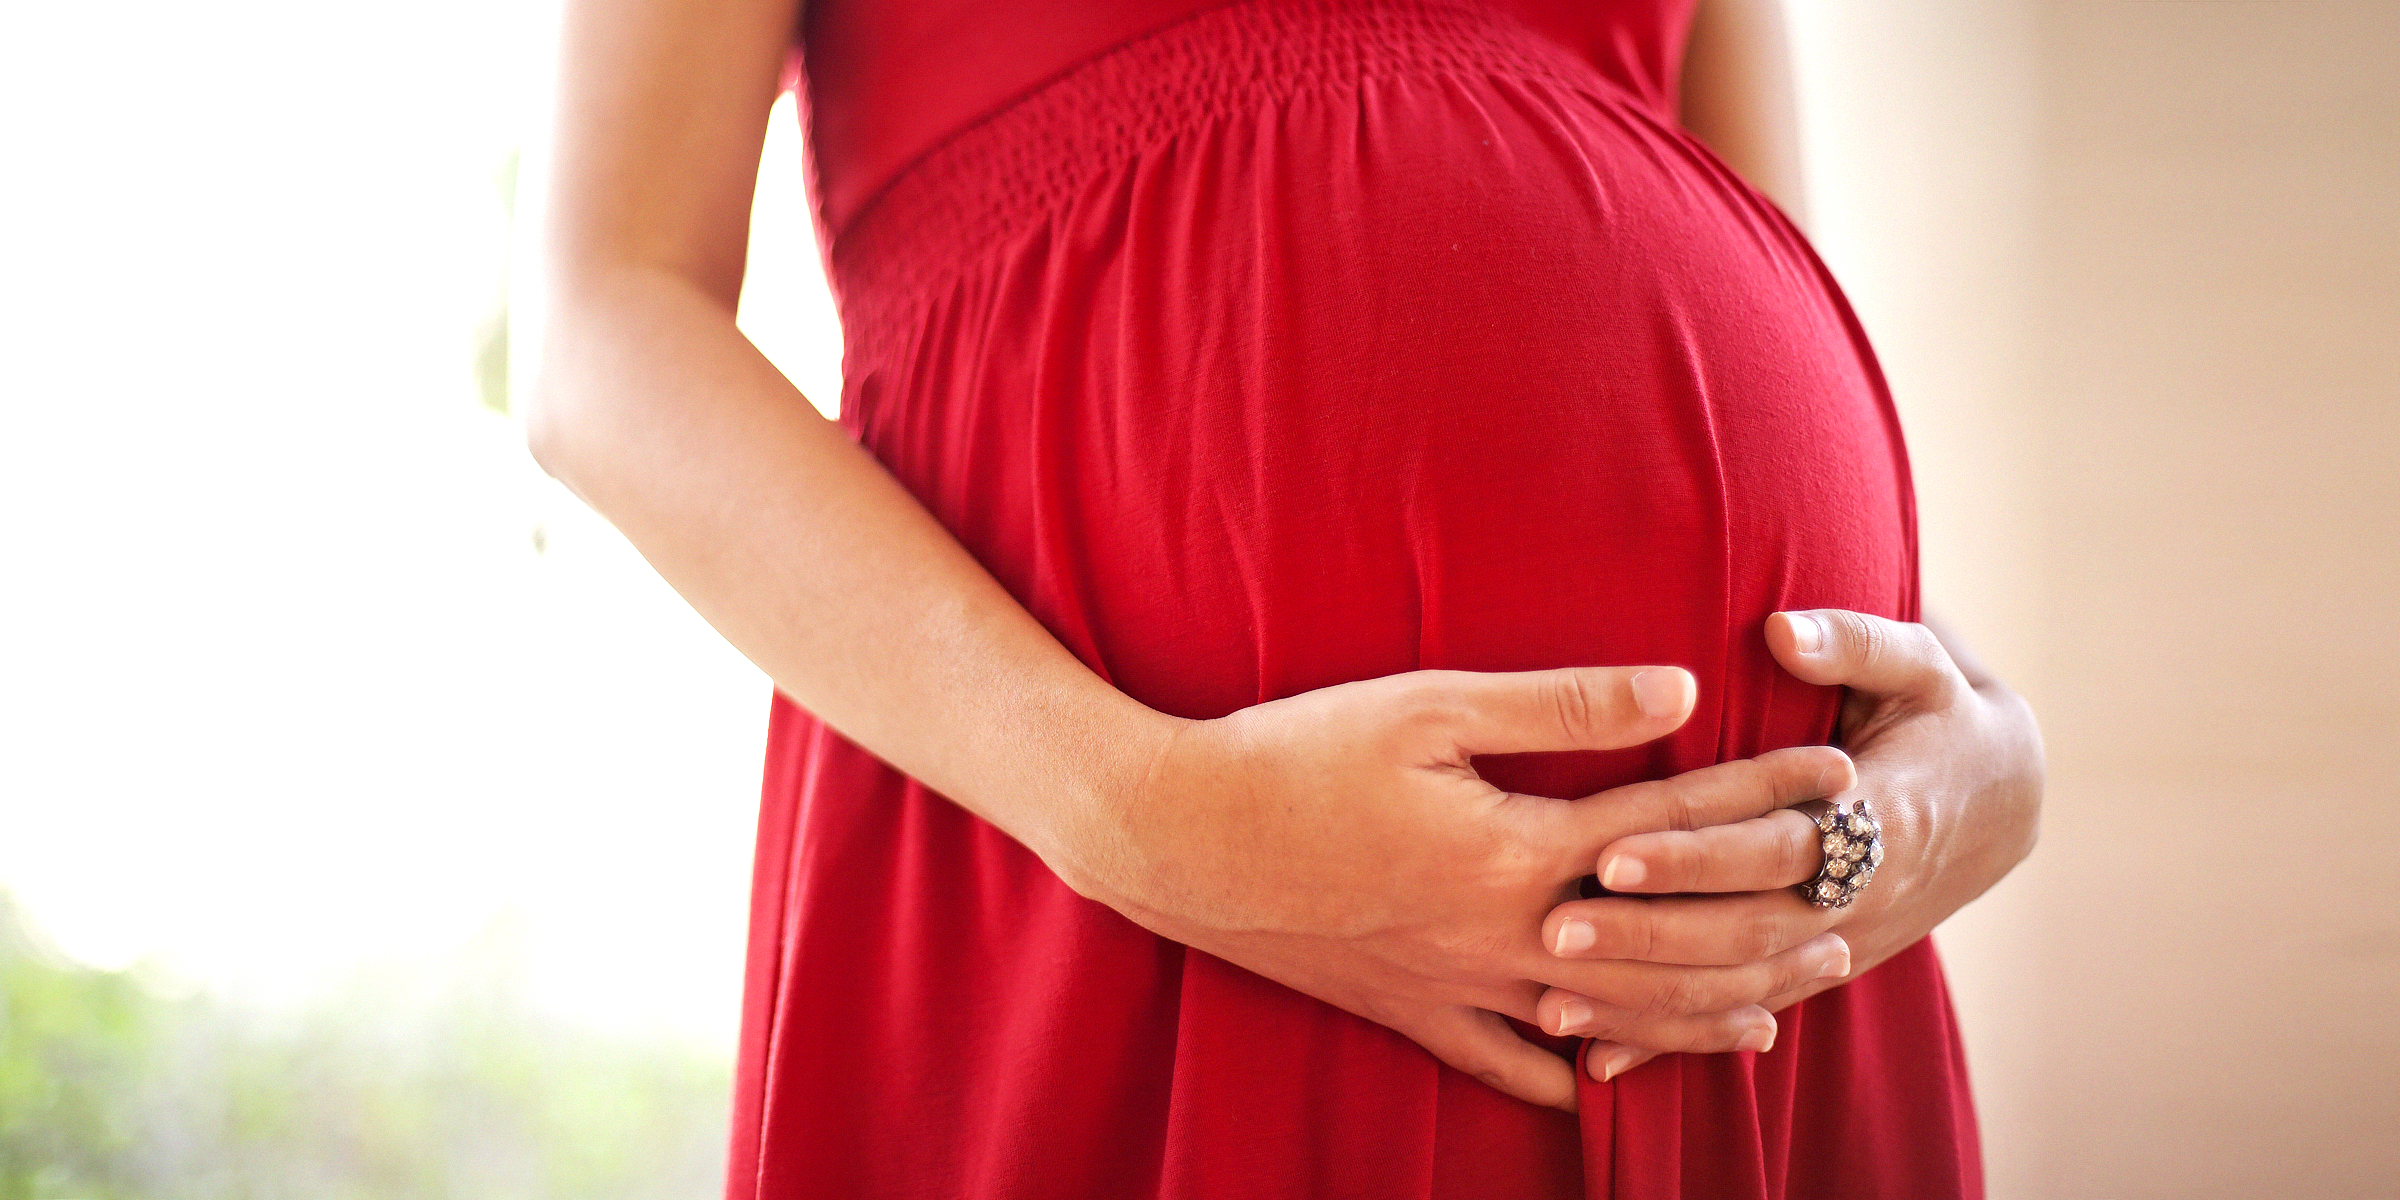 Schwangere Frau, die ihren Bauch hält | Quelle: Shutterstock